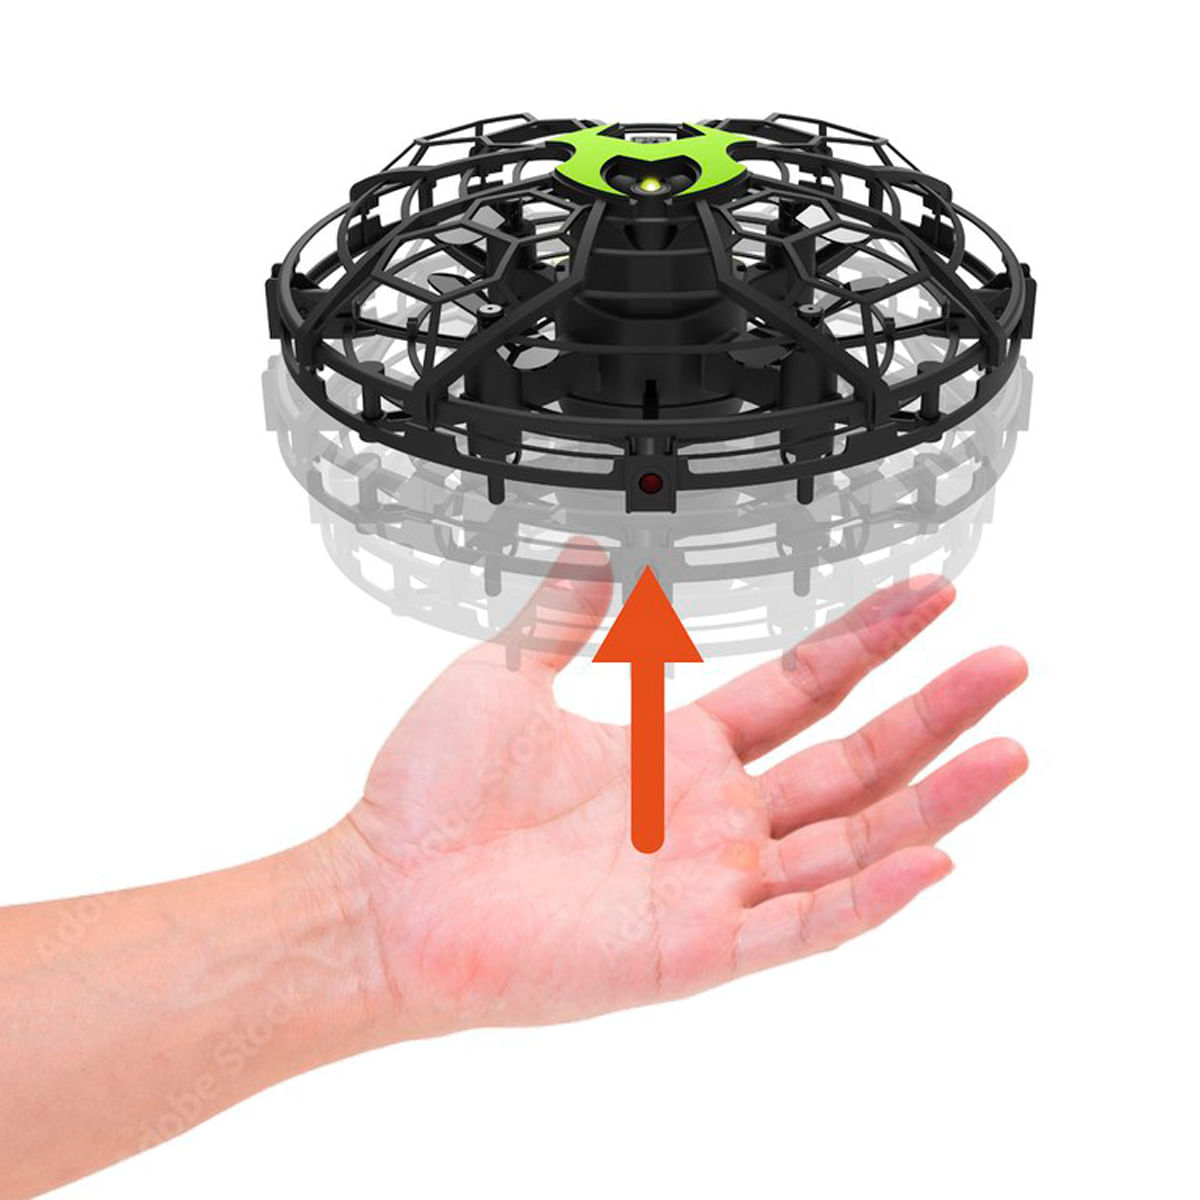 UFO Drone Flybotic pilotable avec la main